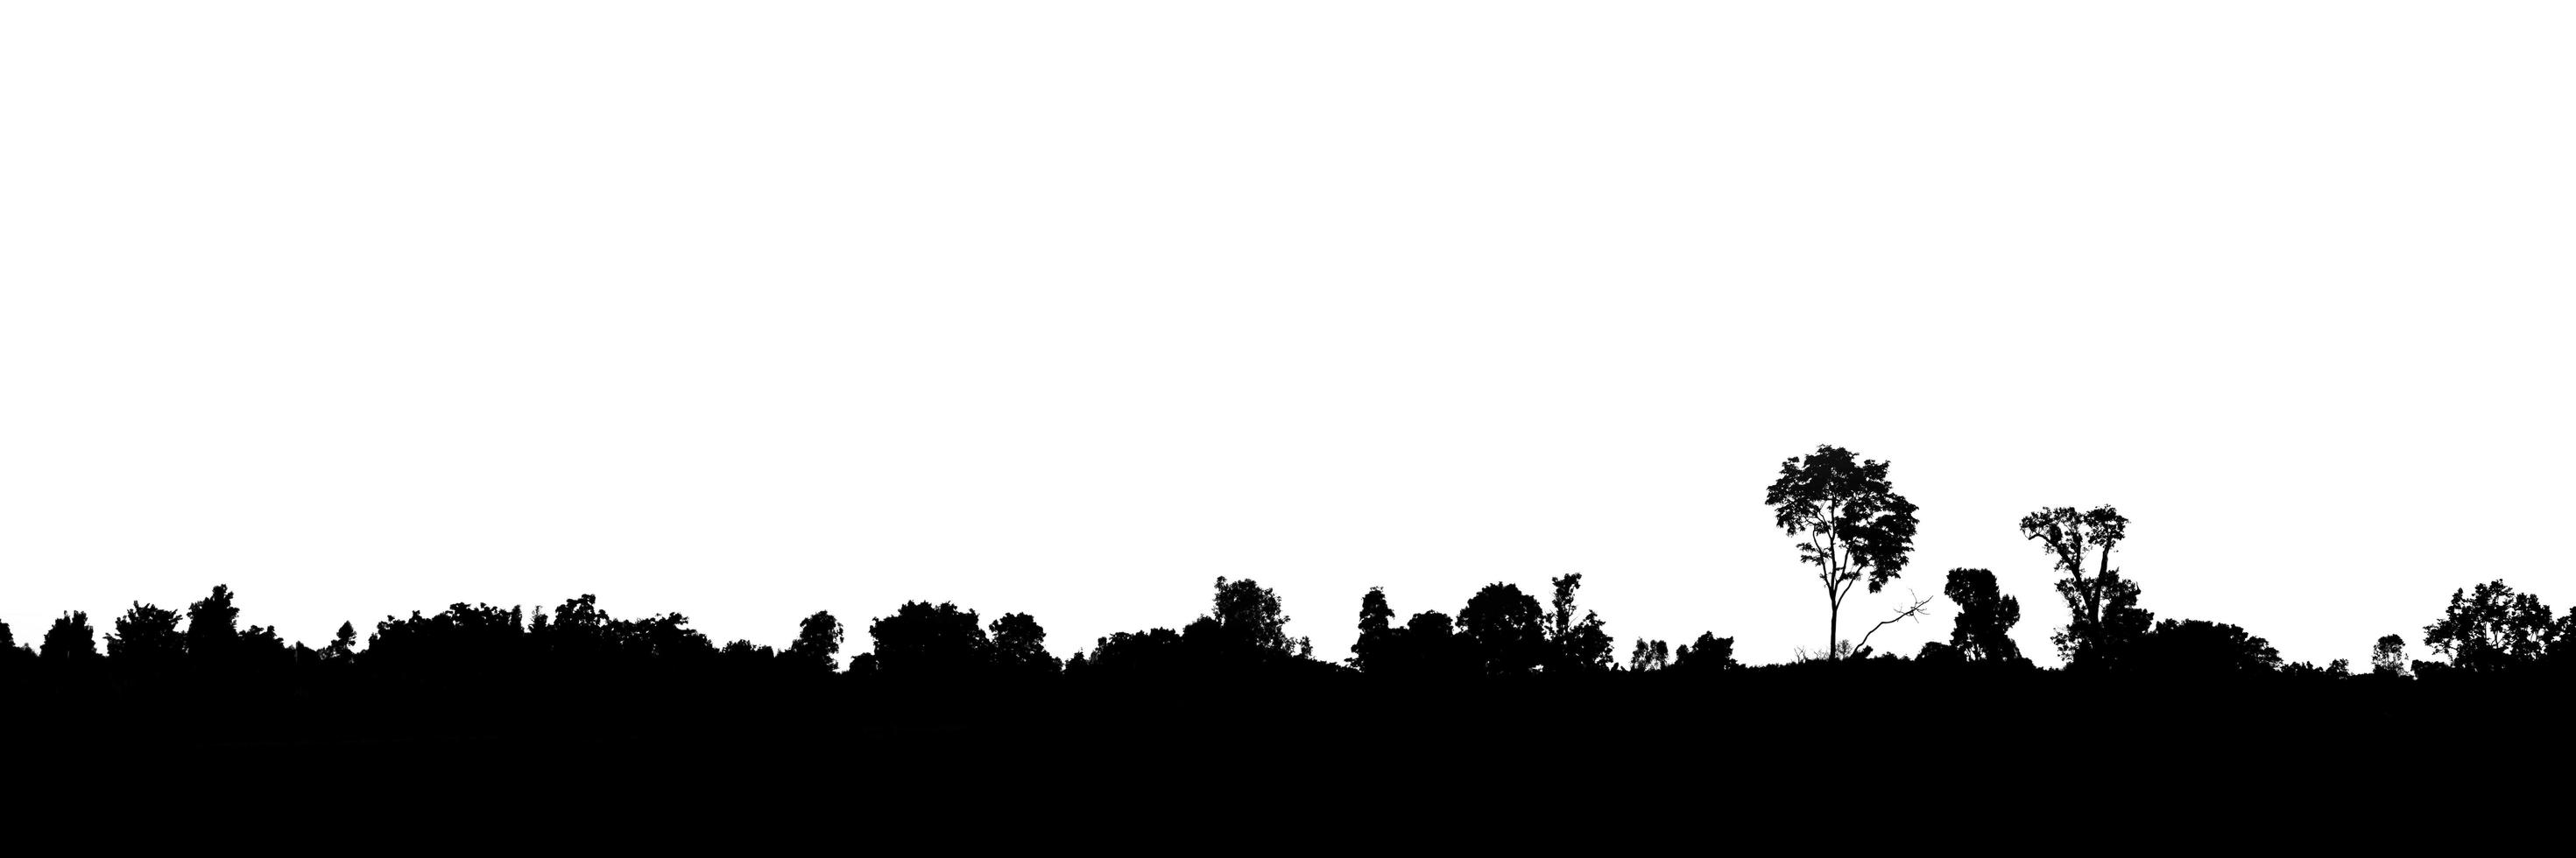 silhouette de paysage d'arbres sur fond blanc isolé photo